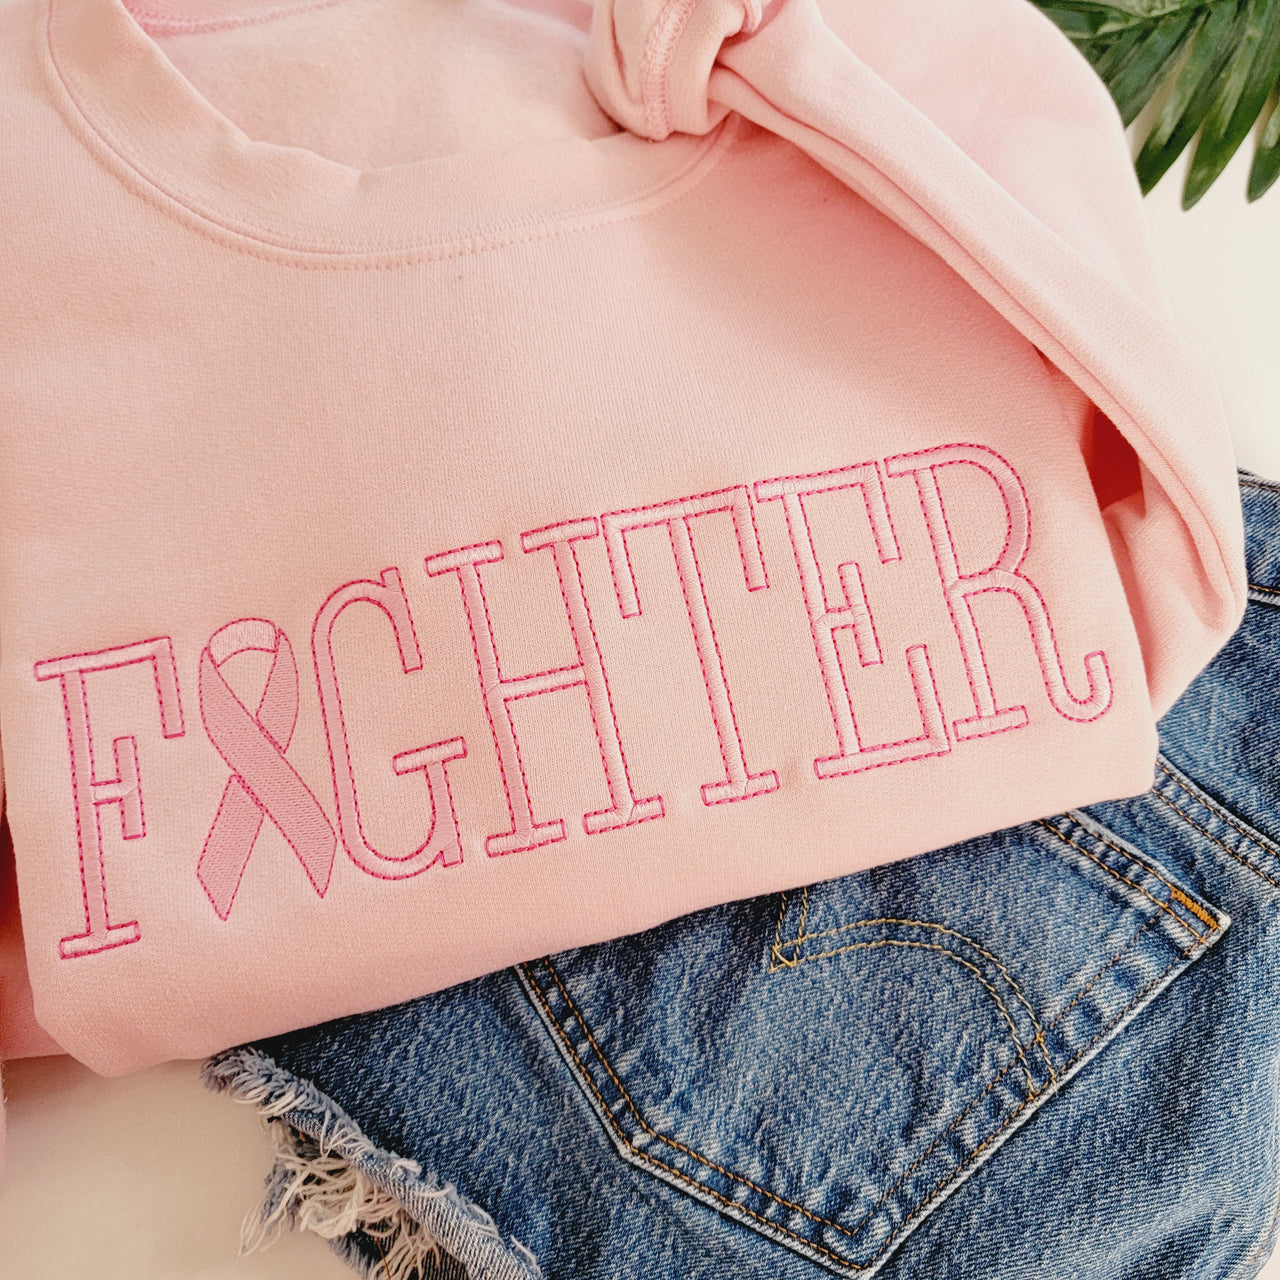 Cancer Fighter Sweatshirt